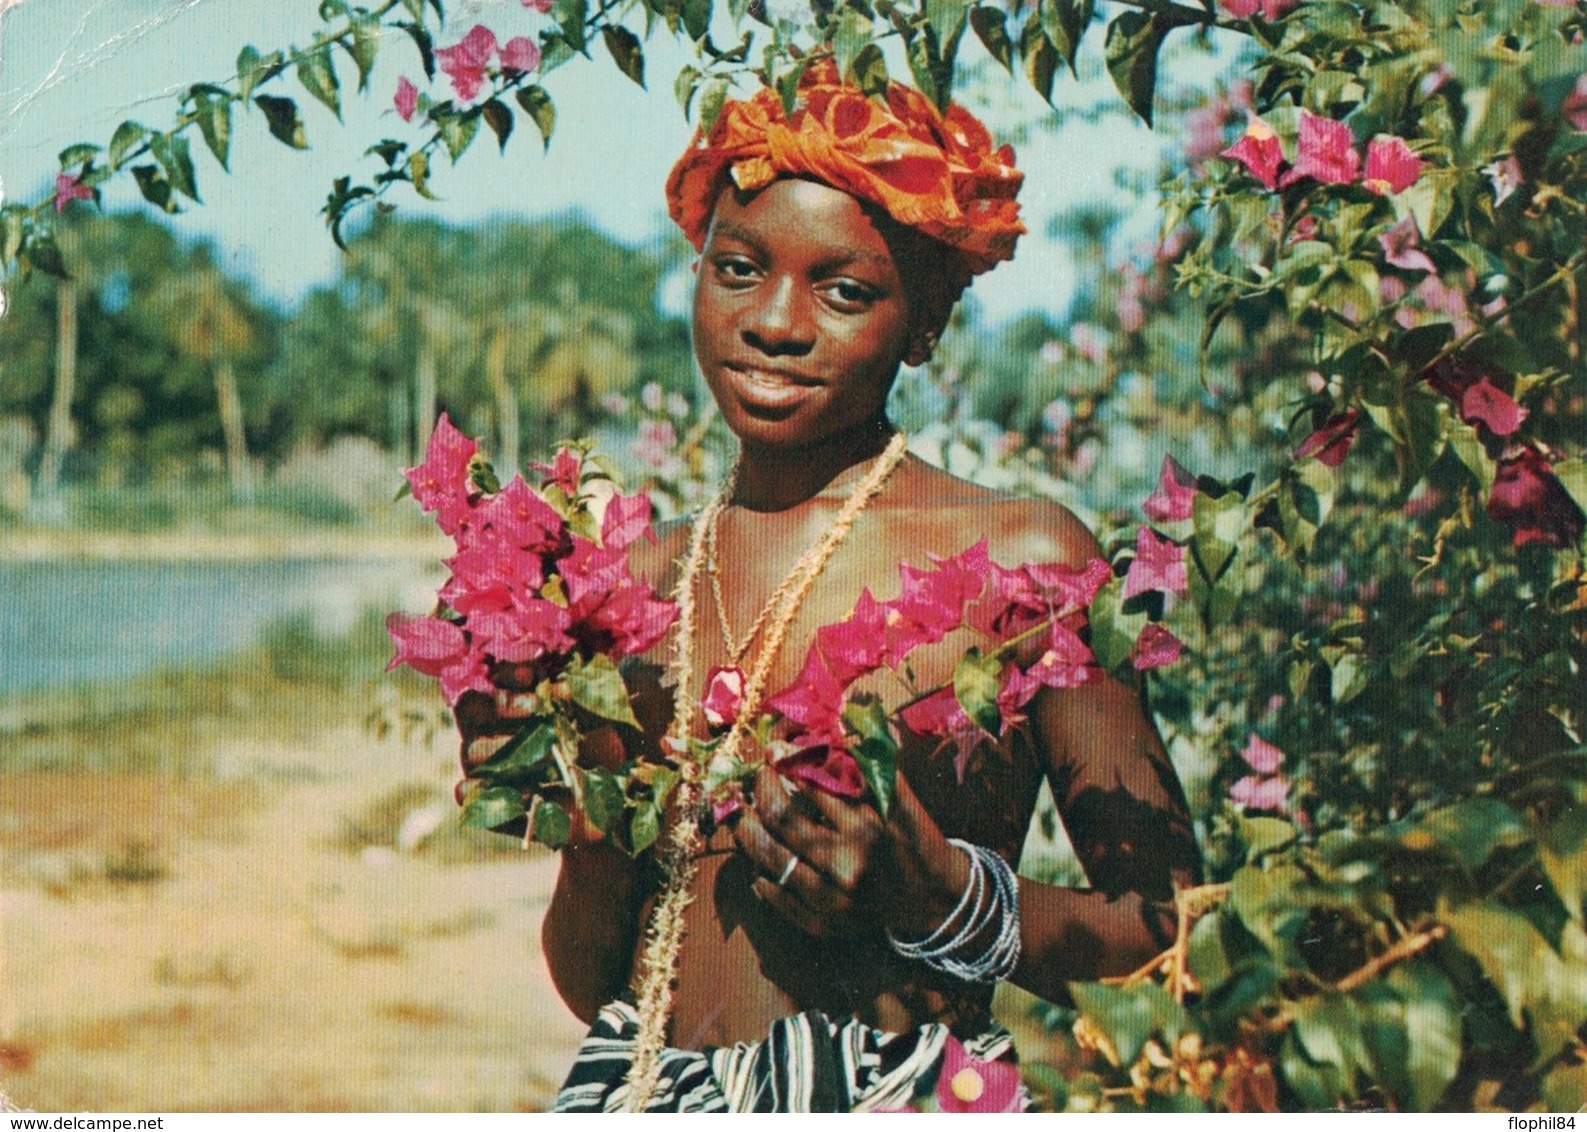 SIERRE LEONE - CROISIERE 1959 -  DU POLE NORD AU POLE SUD - IONYL - PLASMARINE - SIERRA LEONE. - Sierra Leone (...-1960)